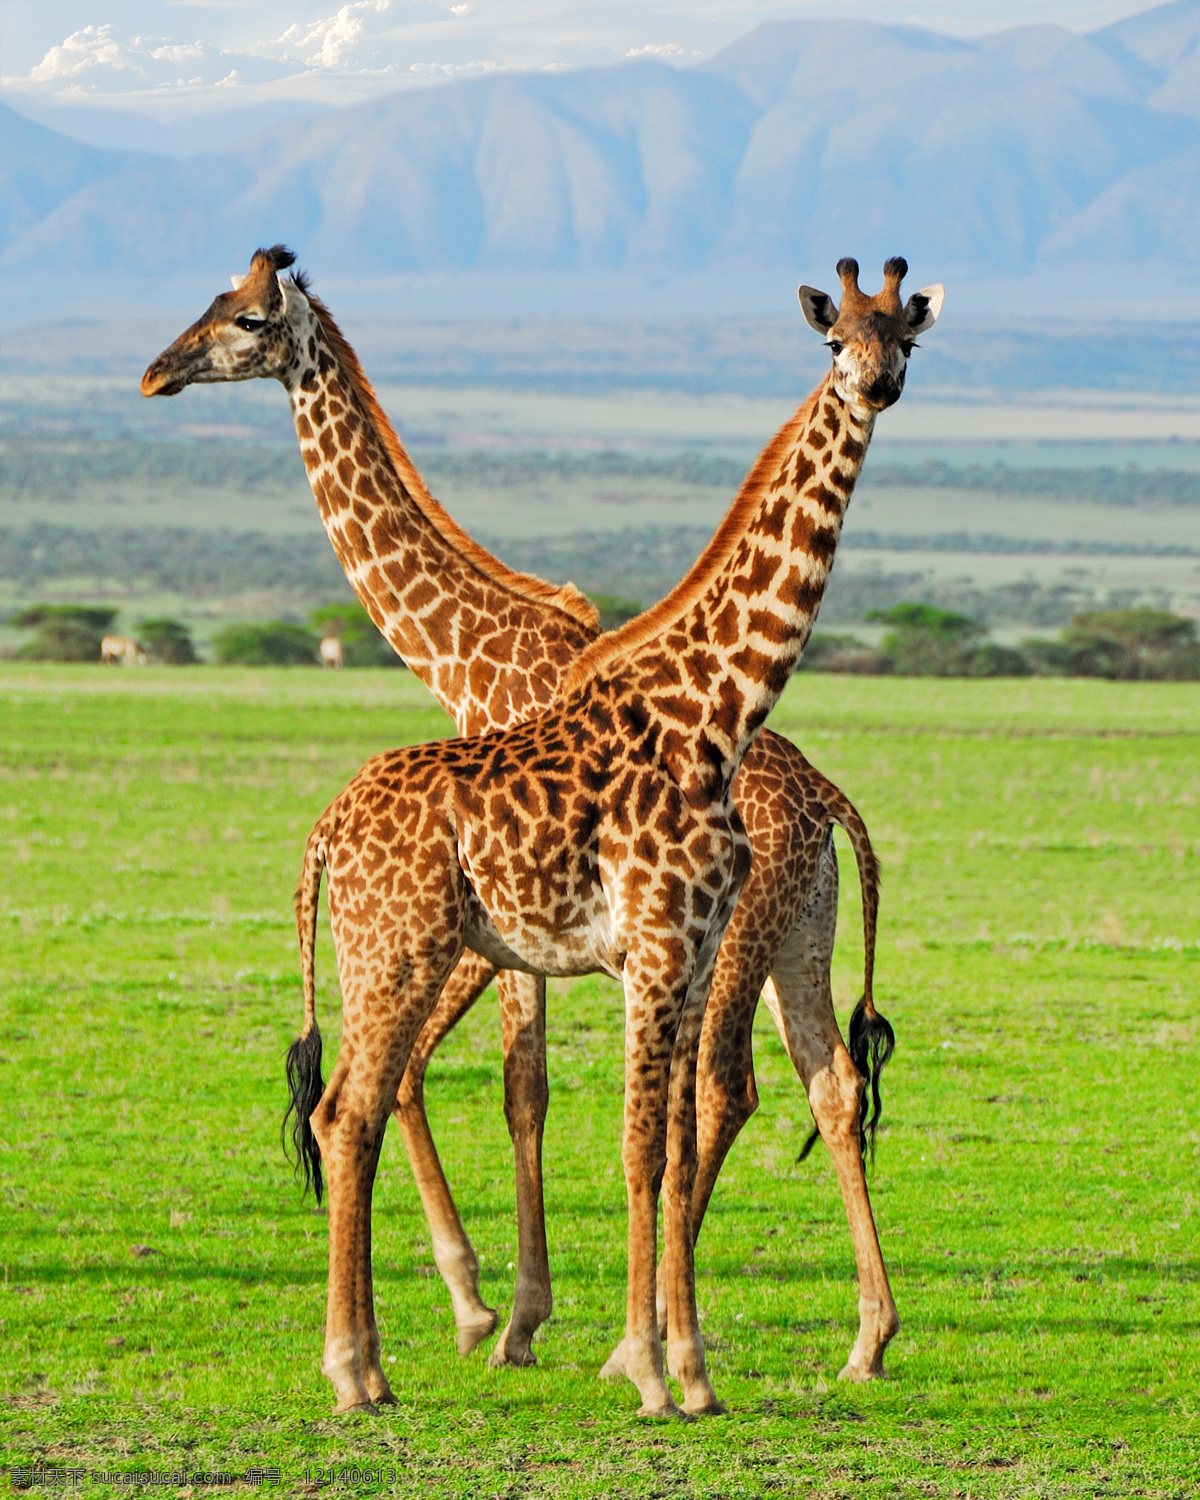 长颈鹿 长颈鹿群 鹿 长脖鹿 草原 绿草 非洲 草原地带 陆生动物 草食动物 动物 生物世界 野生动物